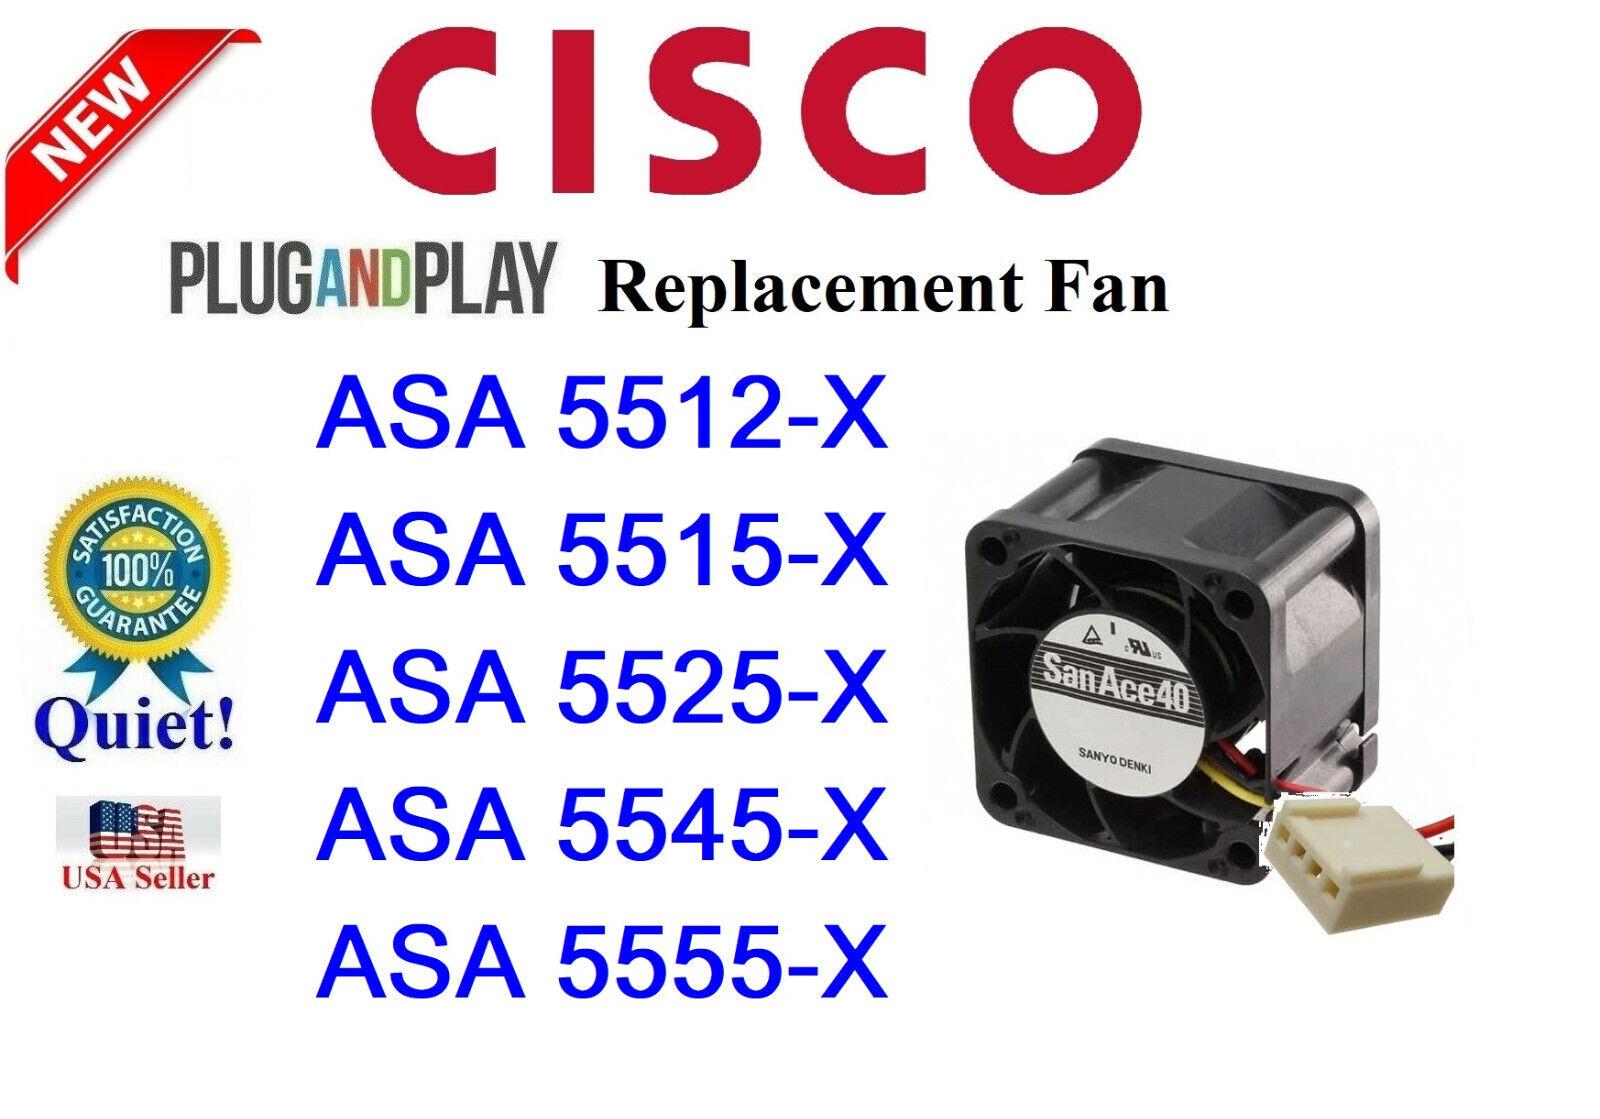 1x QUIET version Replacement Fan for Cisco ASA5512-X, ASA5515-X, ASA5525-X